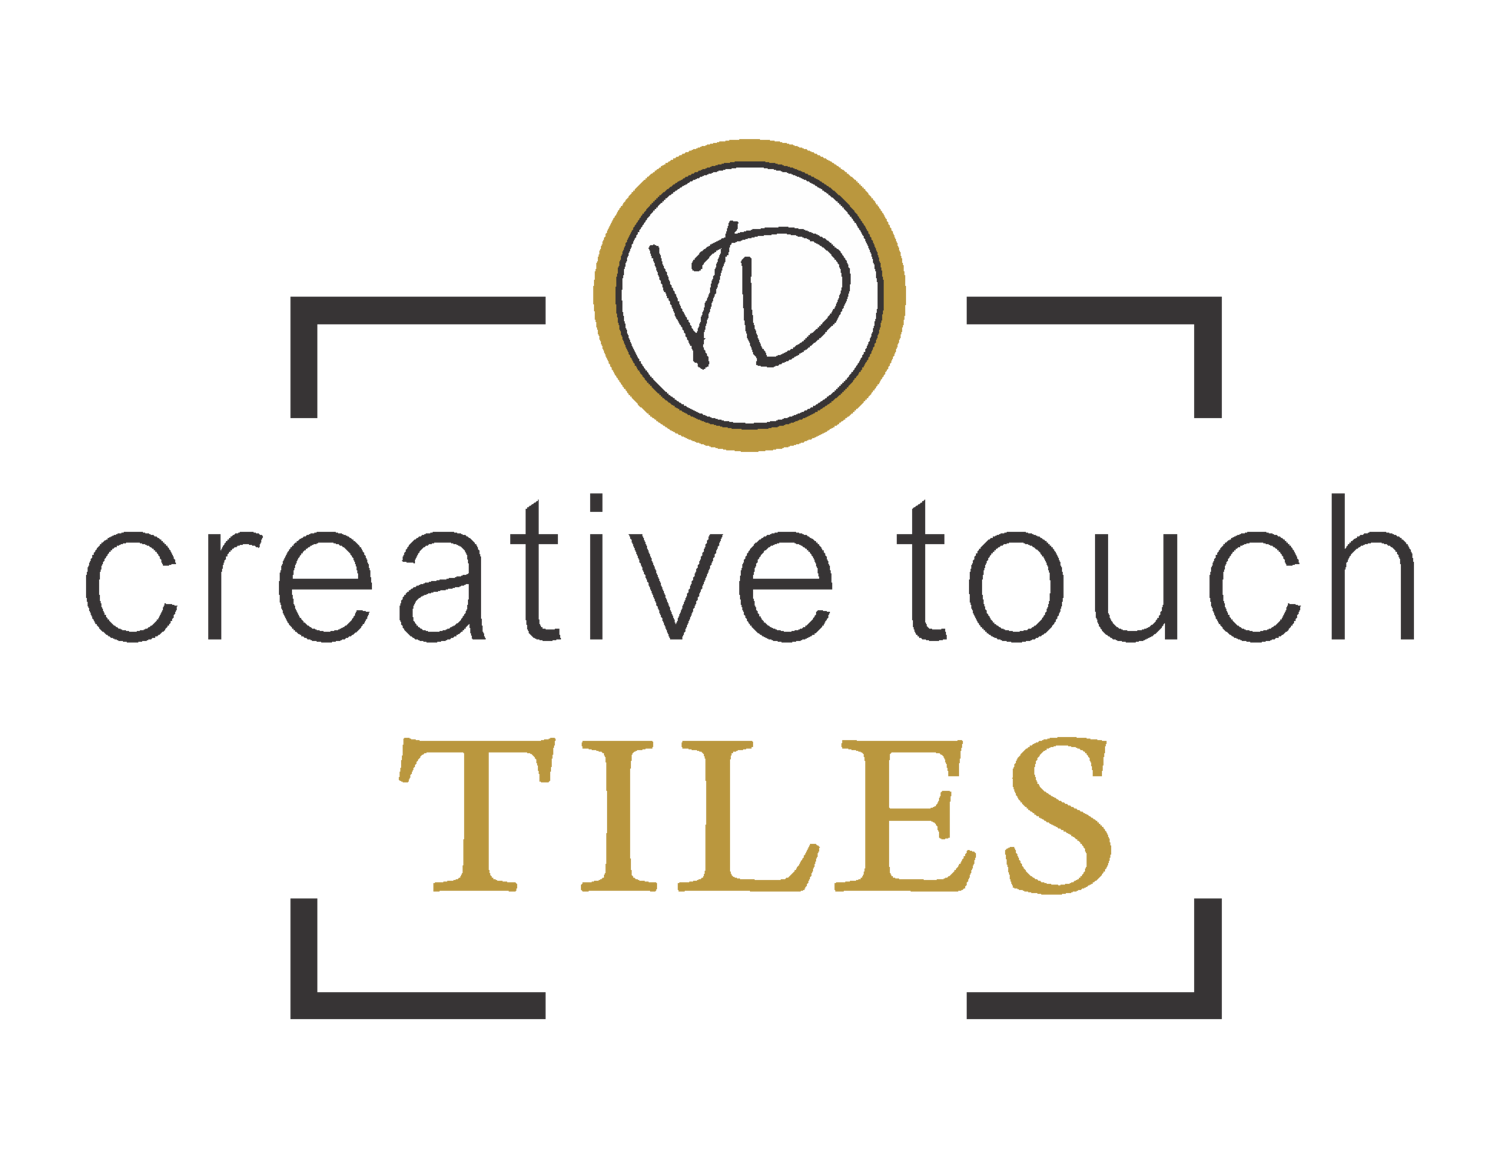 Creative Touch Tiles's logo